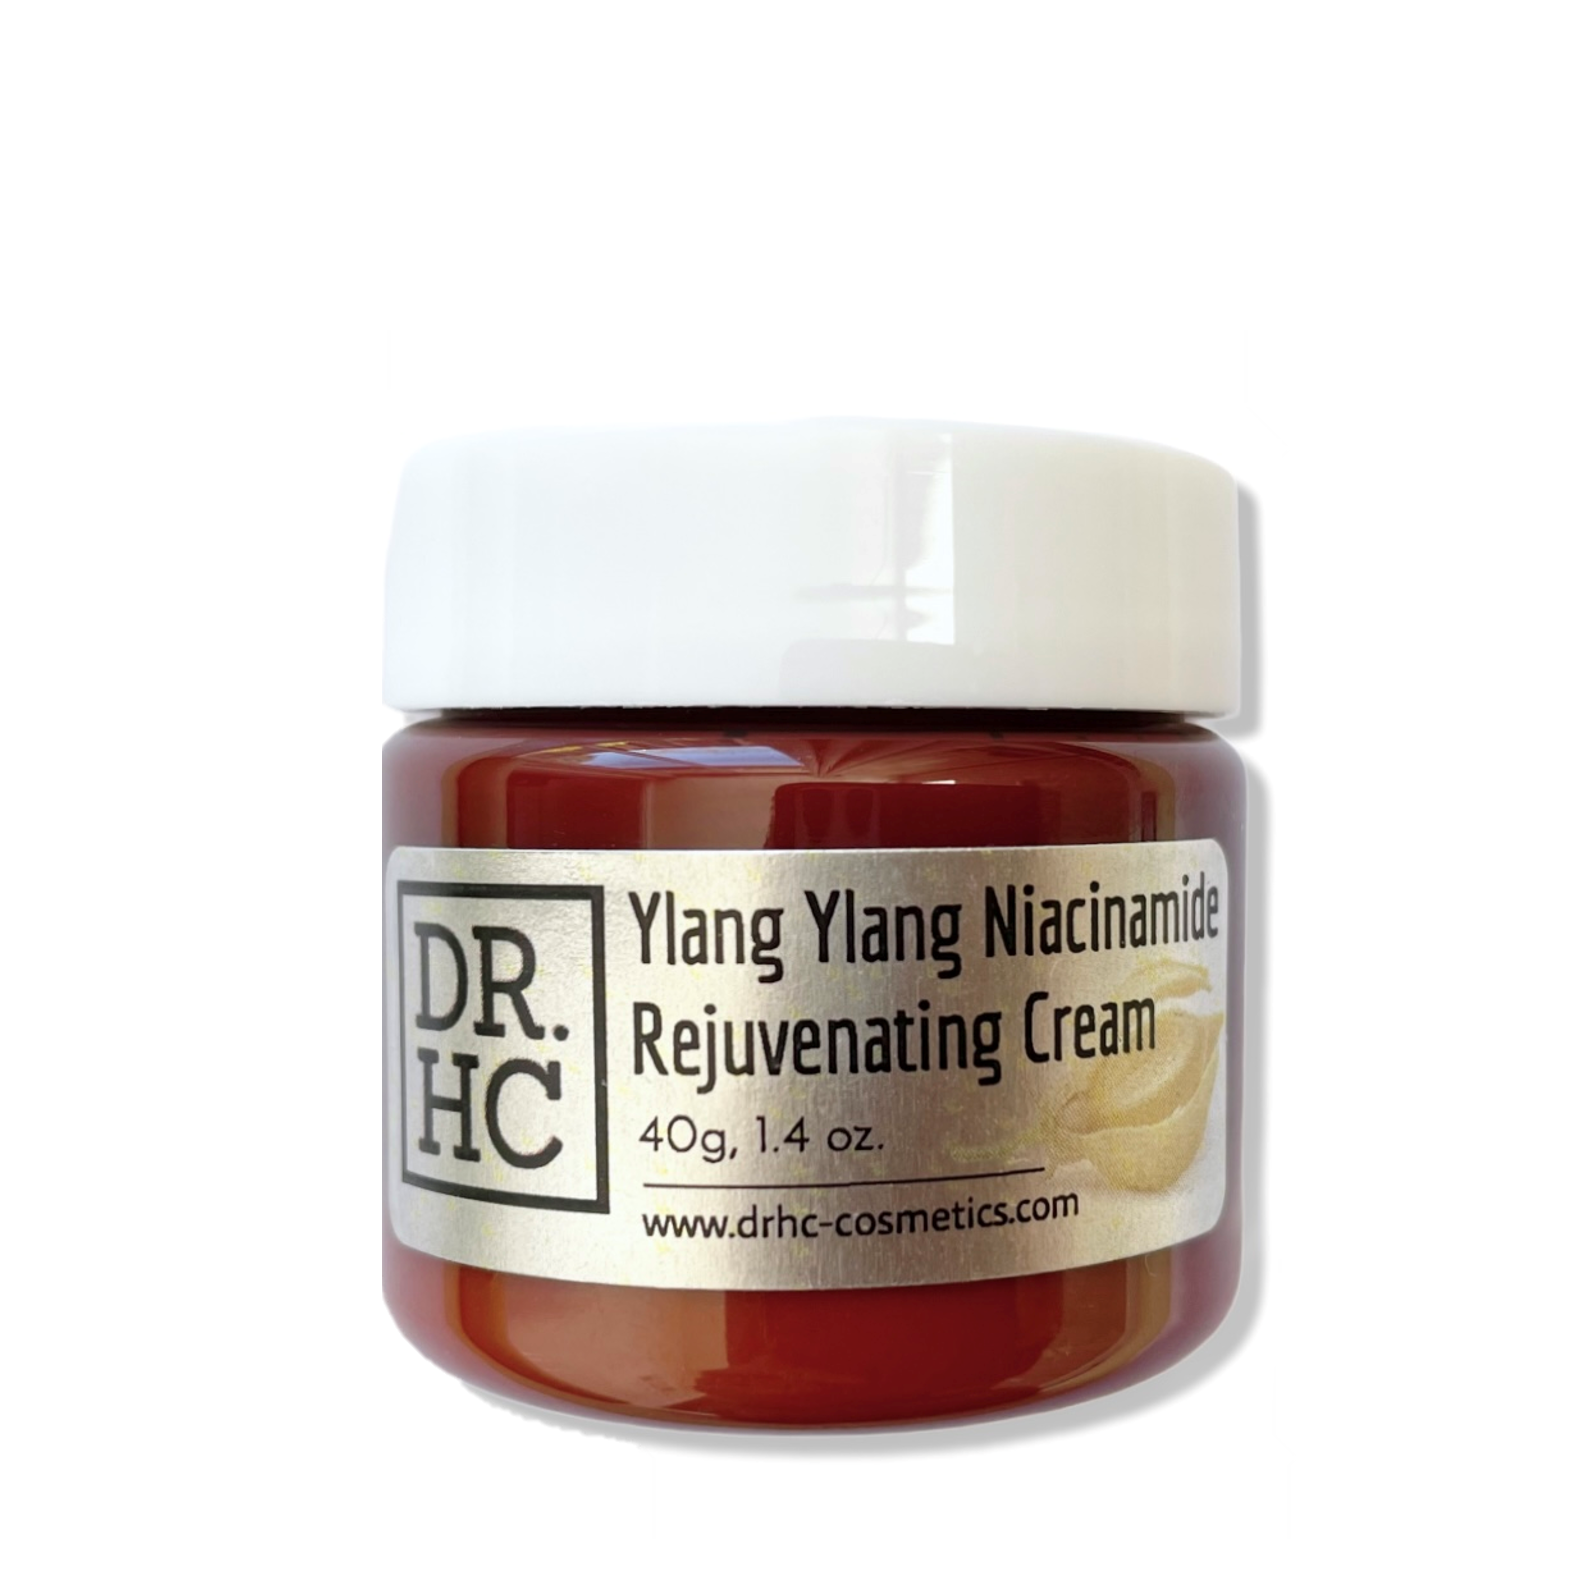 DR.HC Ylang Ylang Niacinamide Rejuvenating Cream (25~40g, 0.9~1.4oz.) (Skin recovery, Anti-scar, Firming, Anti-inflammatory...)-4